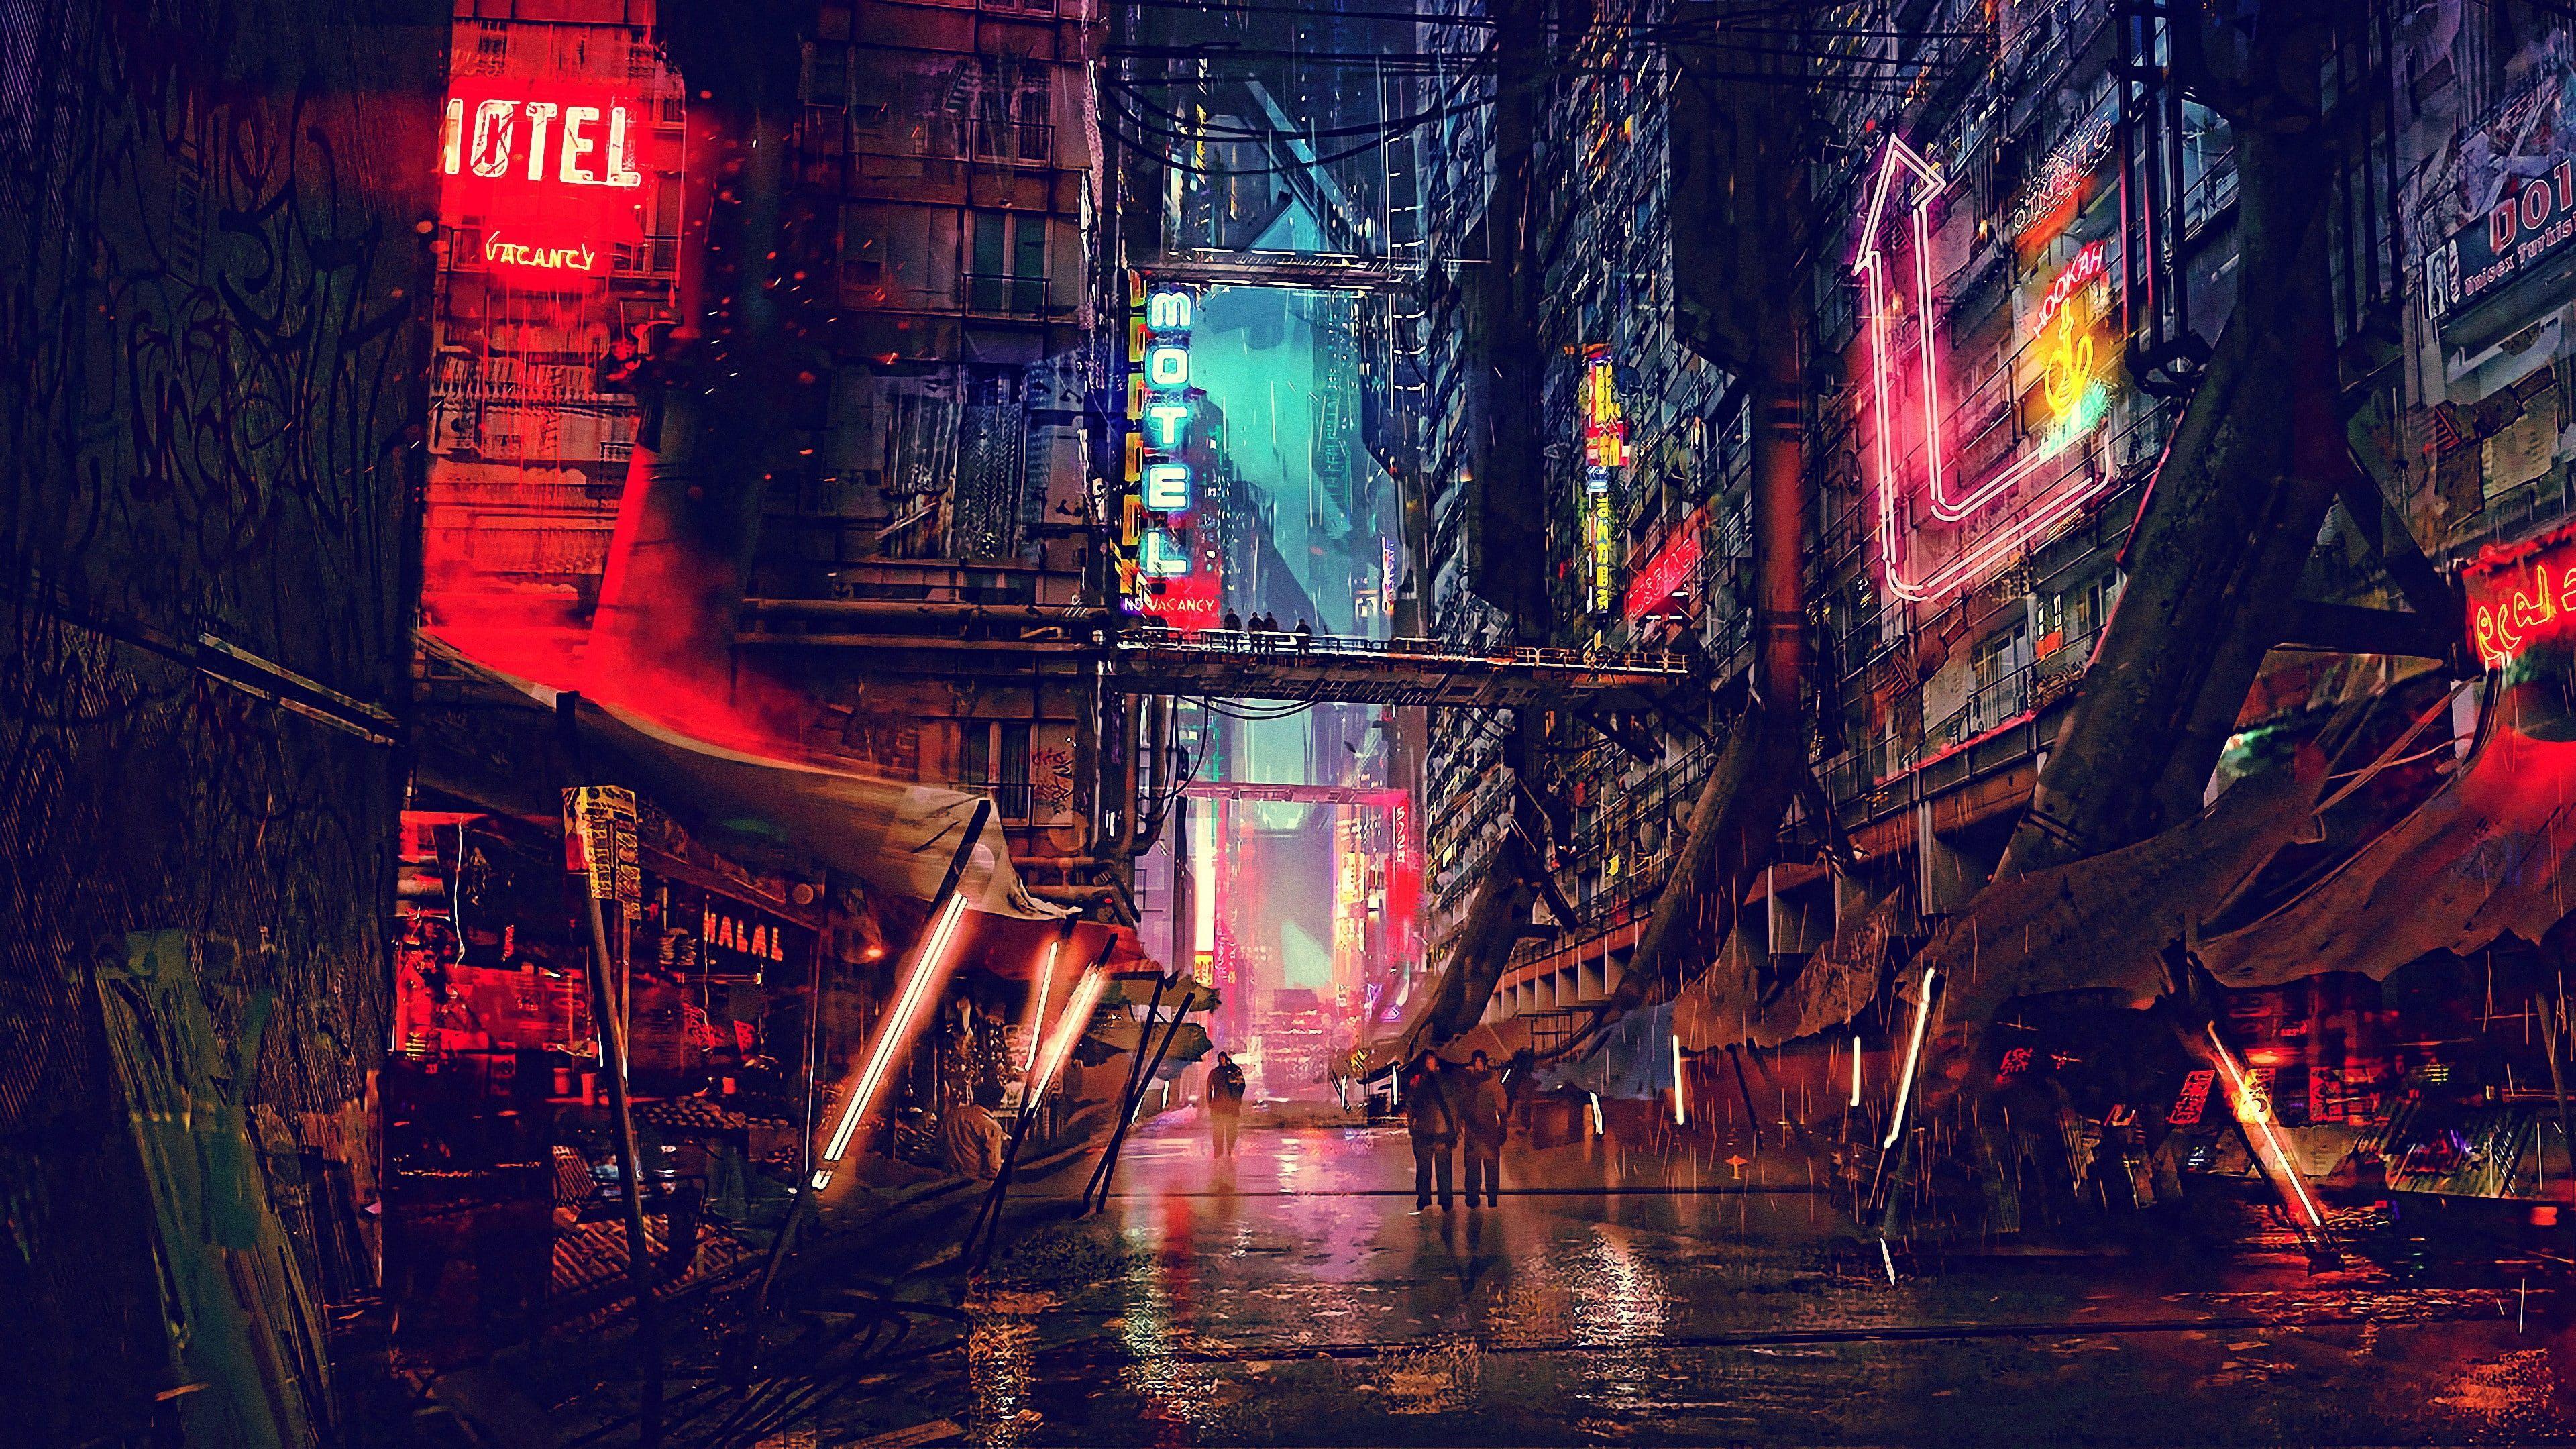 3840x2160 đường phố #art # tác phẩm nghệ thuật kỹ thuật số thành phố tương lai # bóng tối khoa học viễn tưởng #scifi #cyberpunk # thành phố # đêm.  Thành phố tương lai, Minh họa tòa nhà, Hình nền thành phố